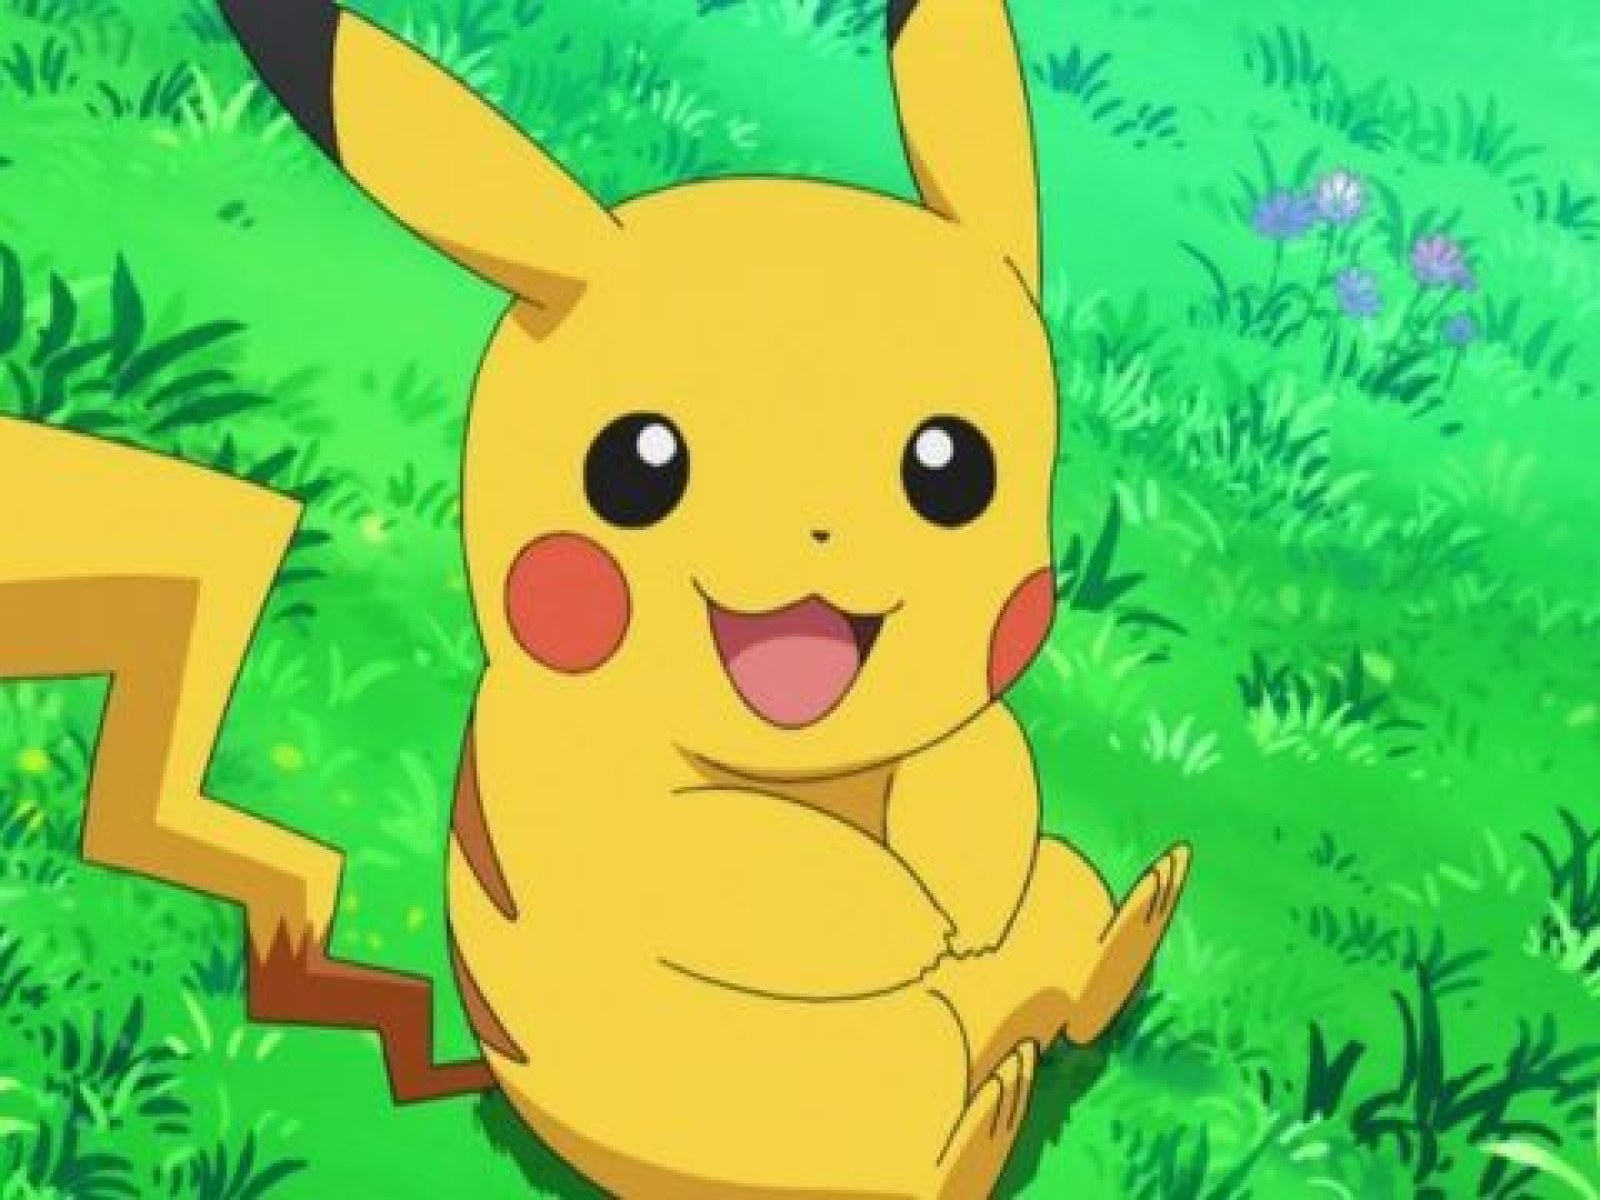 70+ Free Pikachu & Pokemon Images - Pixabay